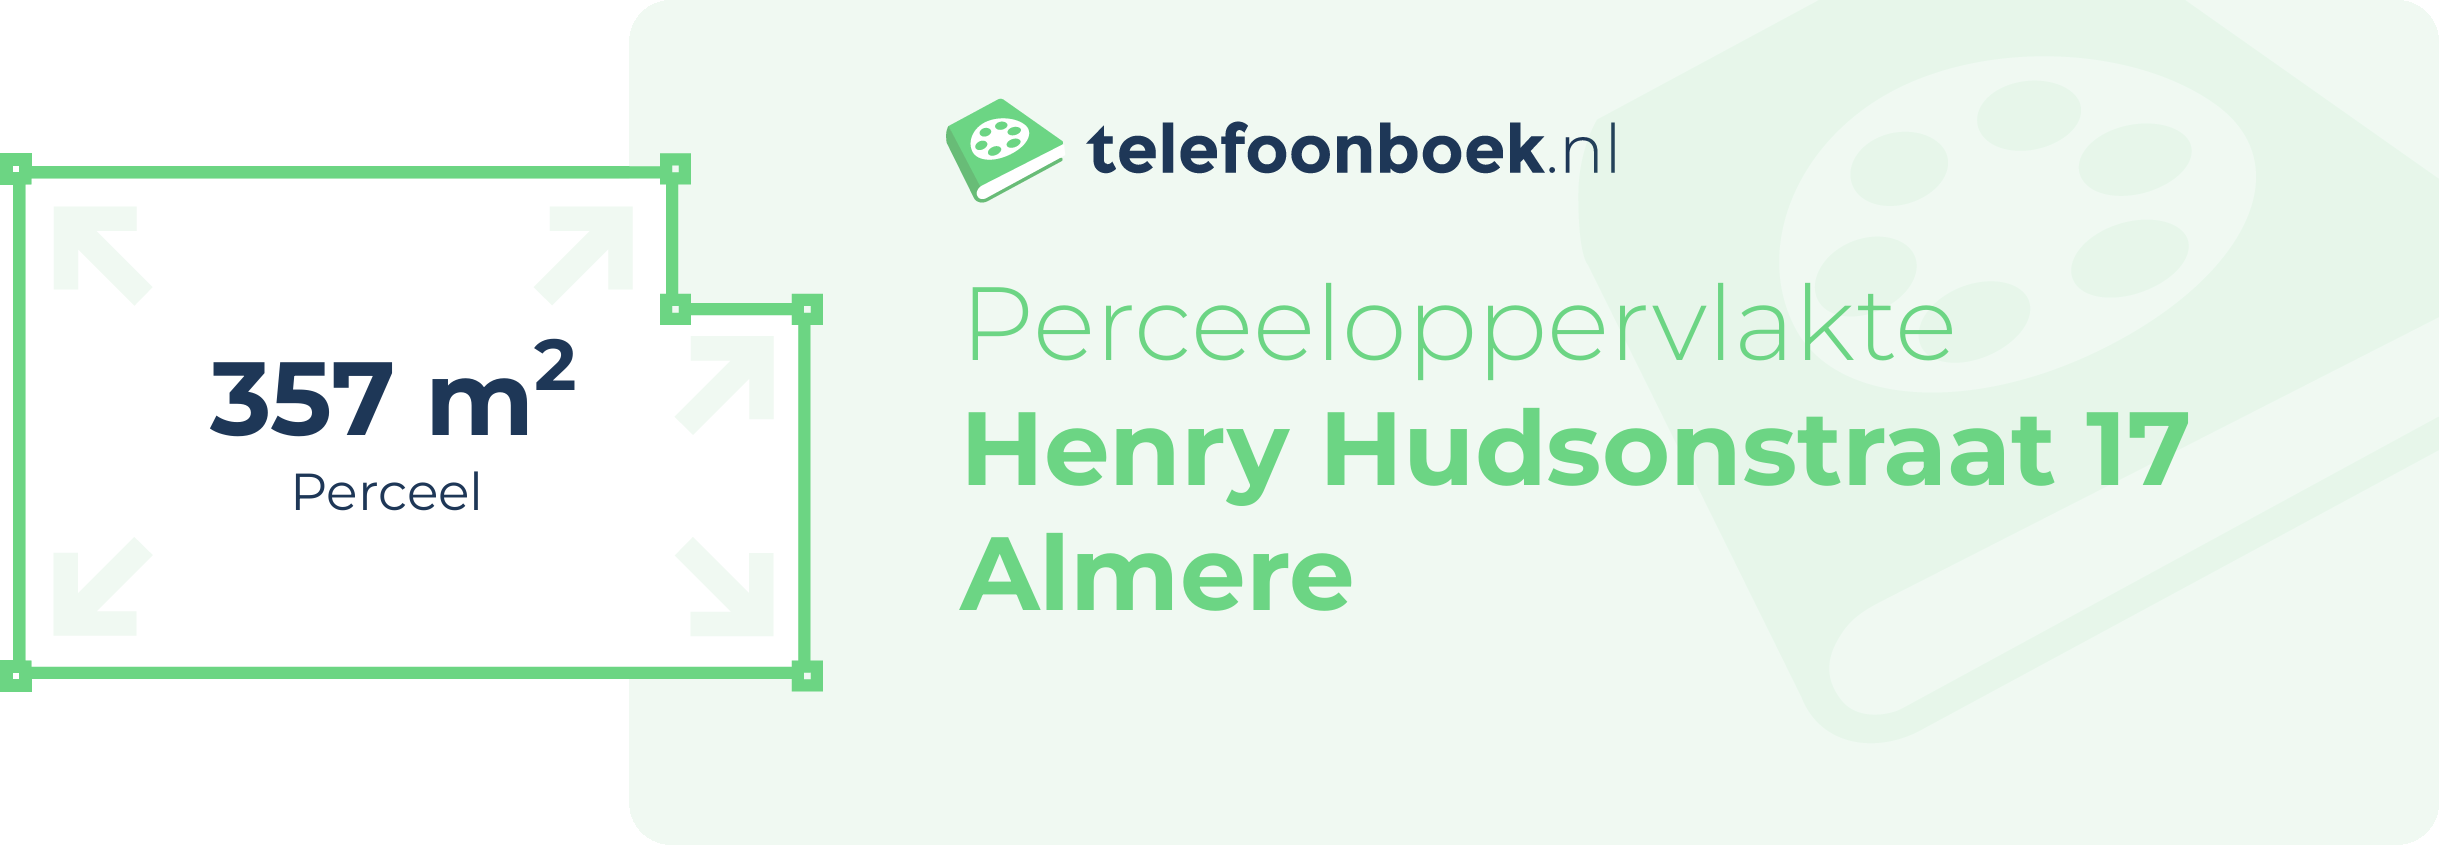 Perceeloppervlakte Henry Hudsonstraat 17 Almere